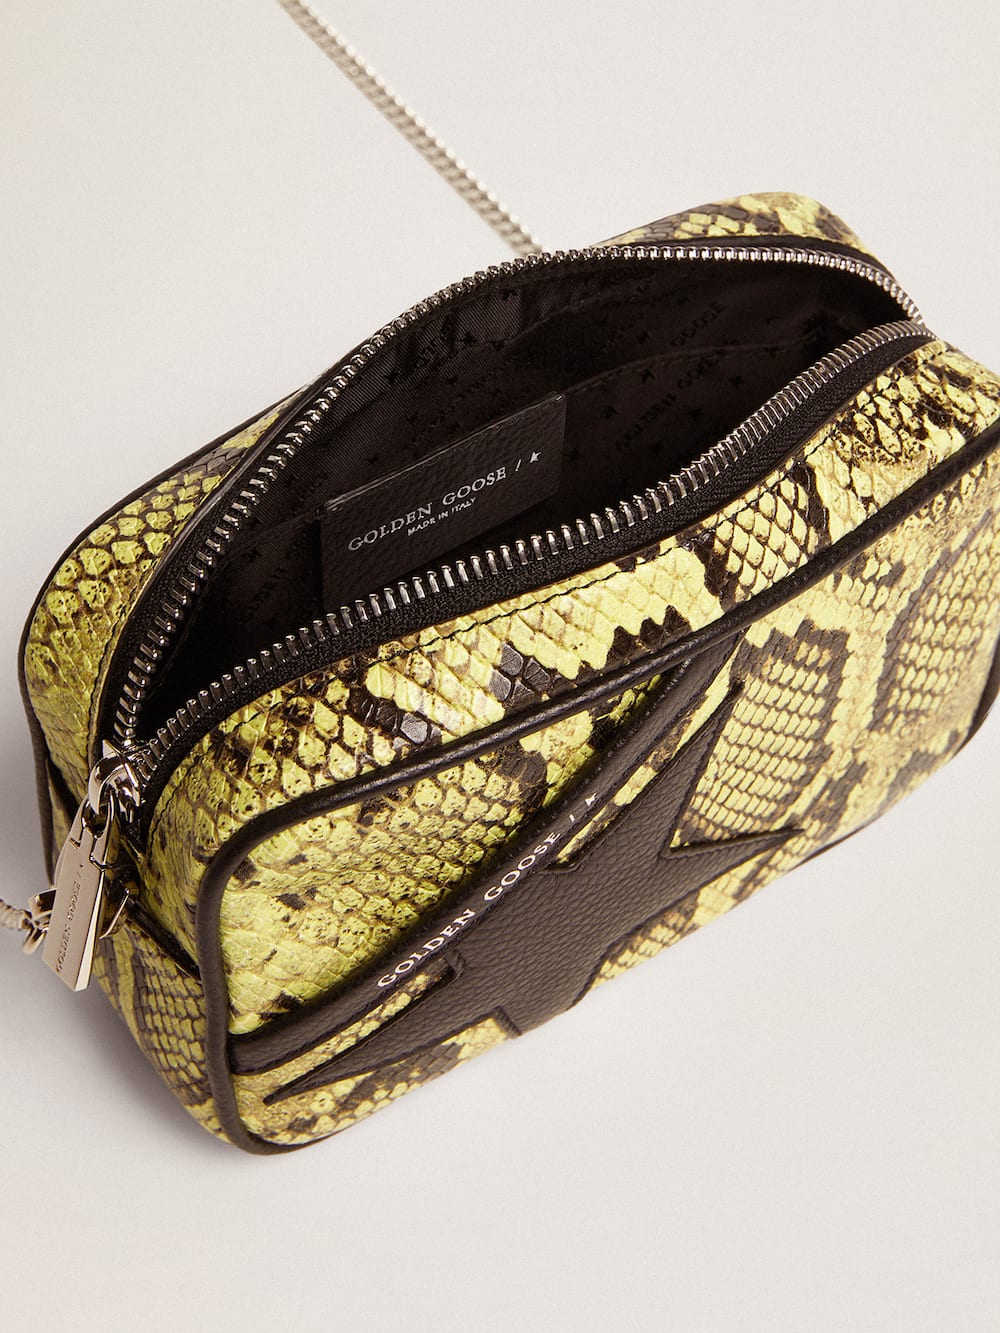 Golden Goose - Mini Star Bag in pelle con stampa pitonata color lime e stella nera in 